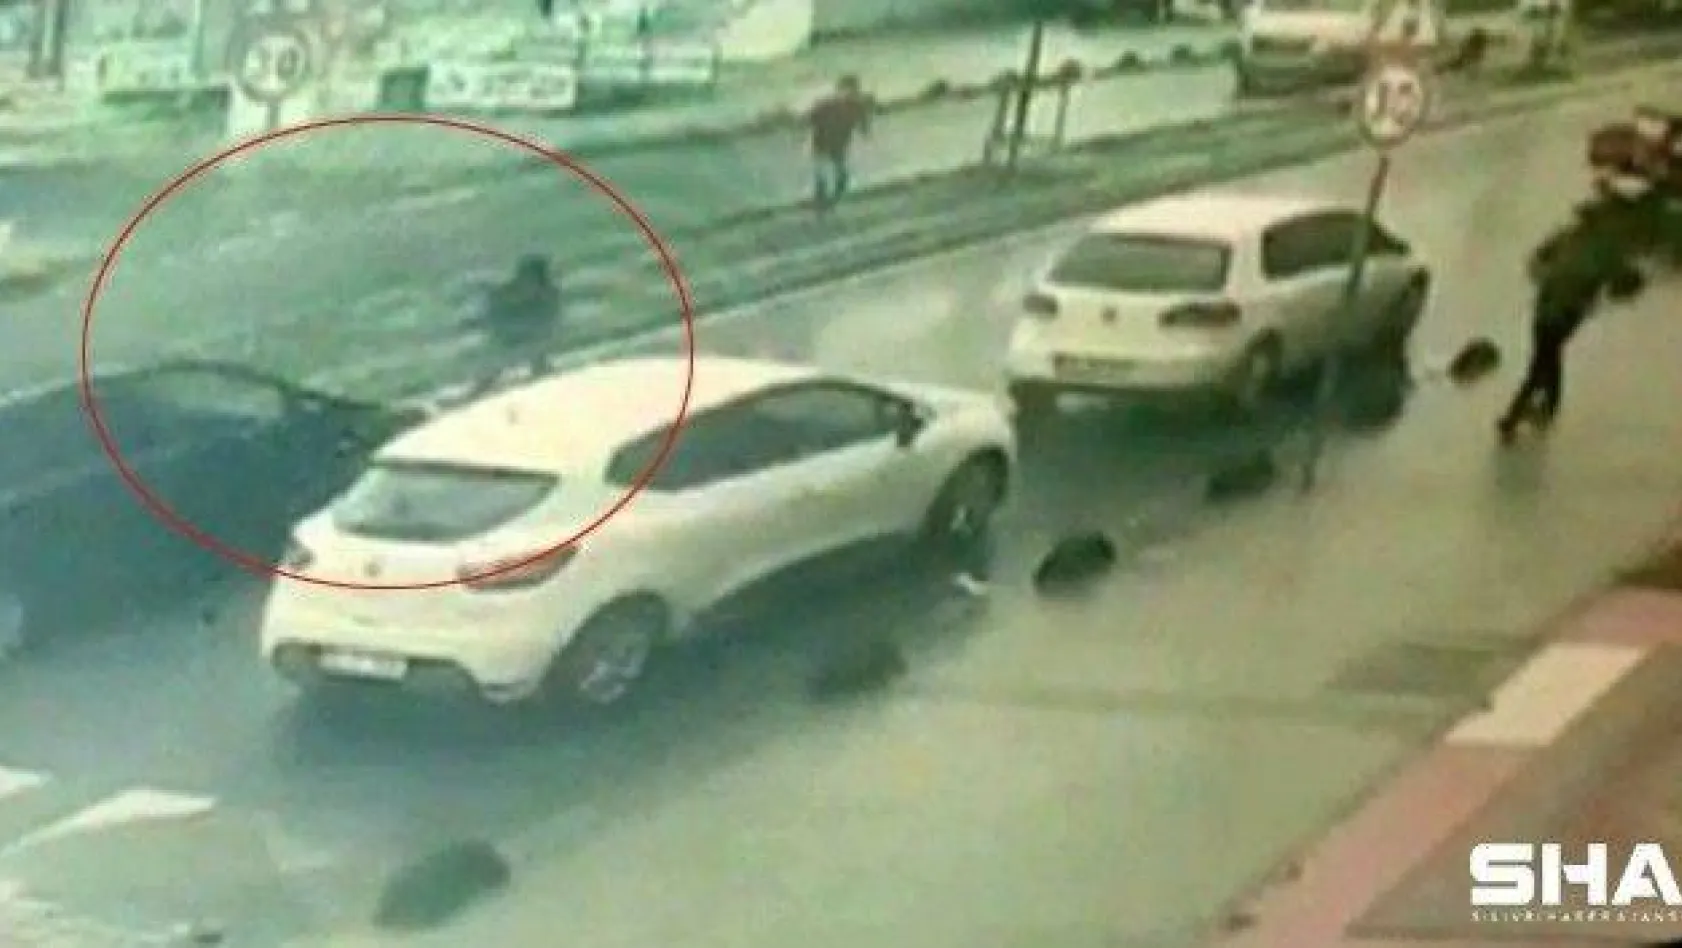 Yolun karşısına geçmeye çalışan çocuğa otomobil çarptı